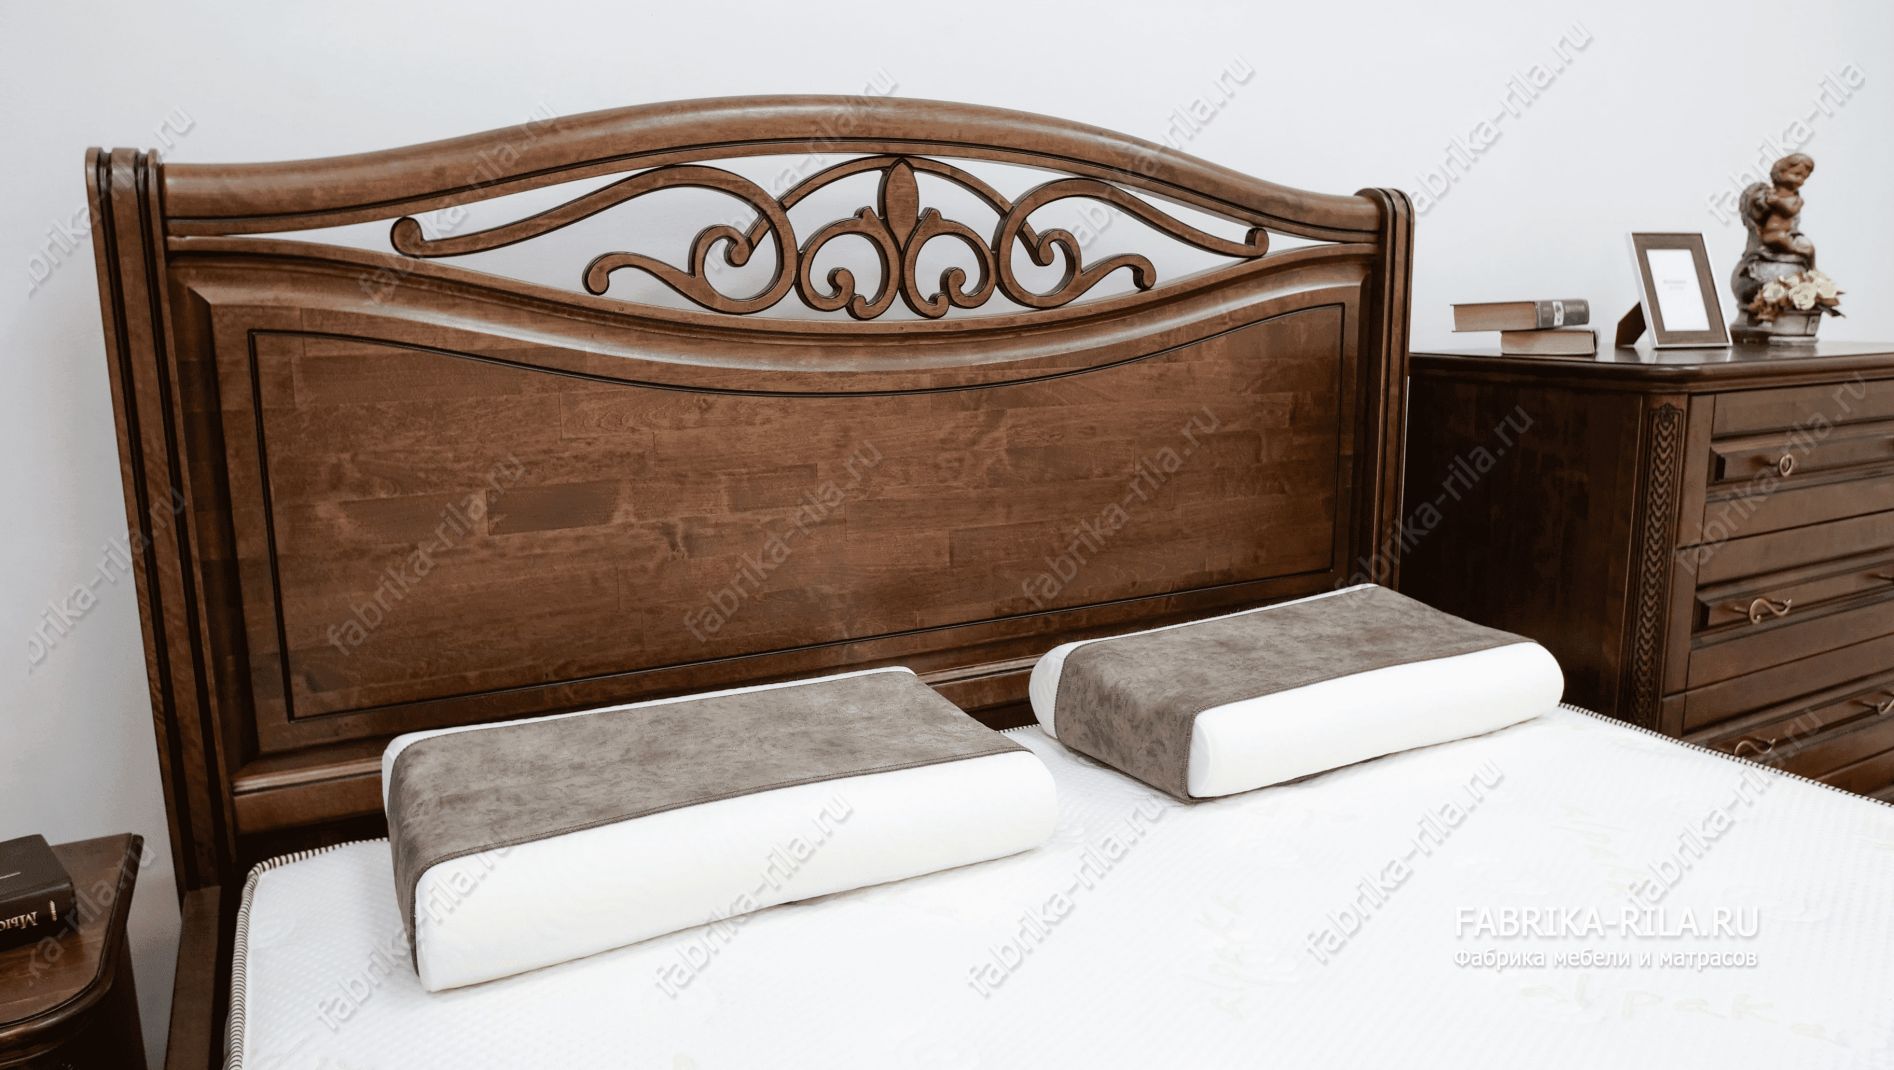 Кровать Plaza-2 — 120x190 см. из березы